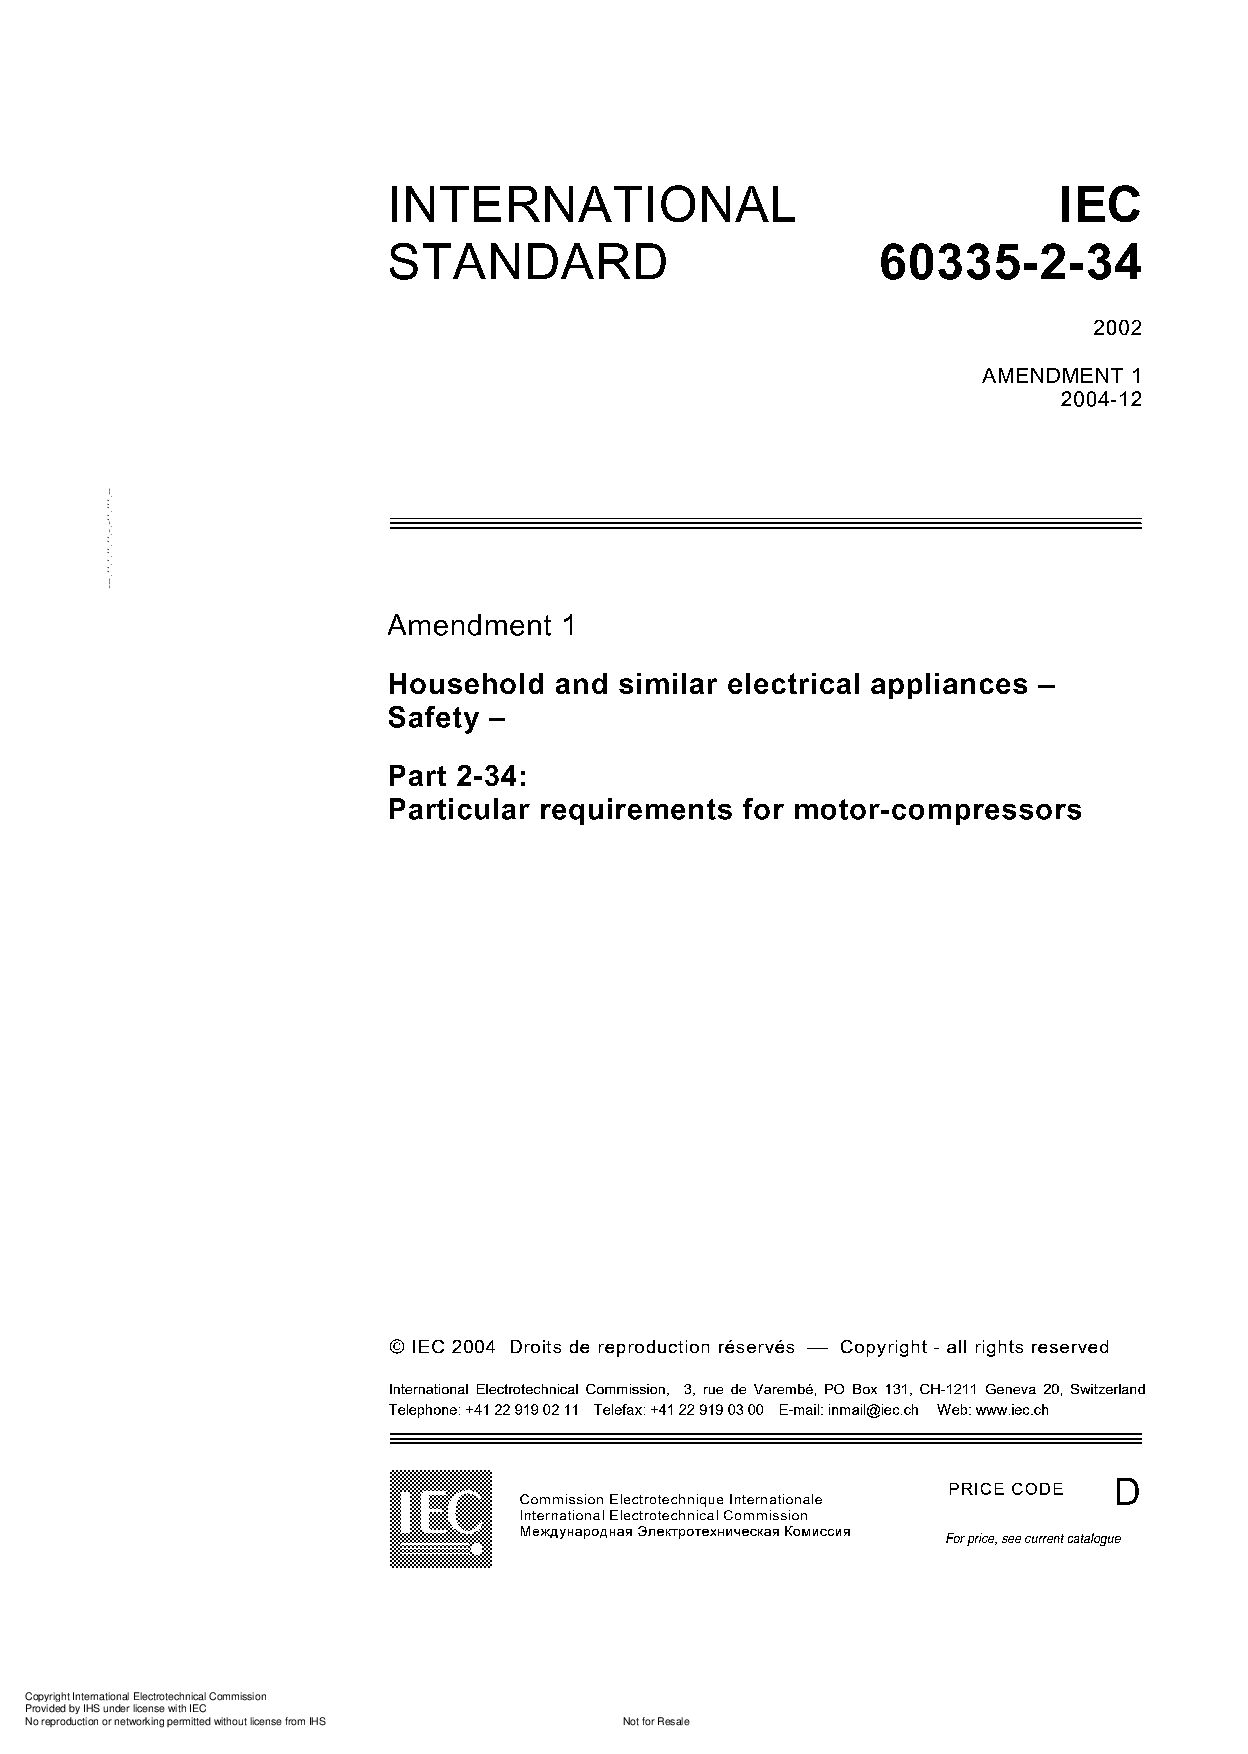 IEC 60335-2-34-2002